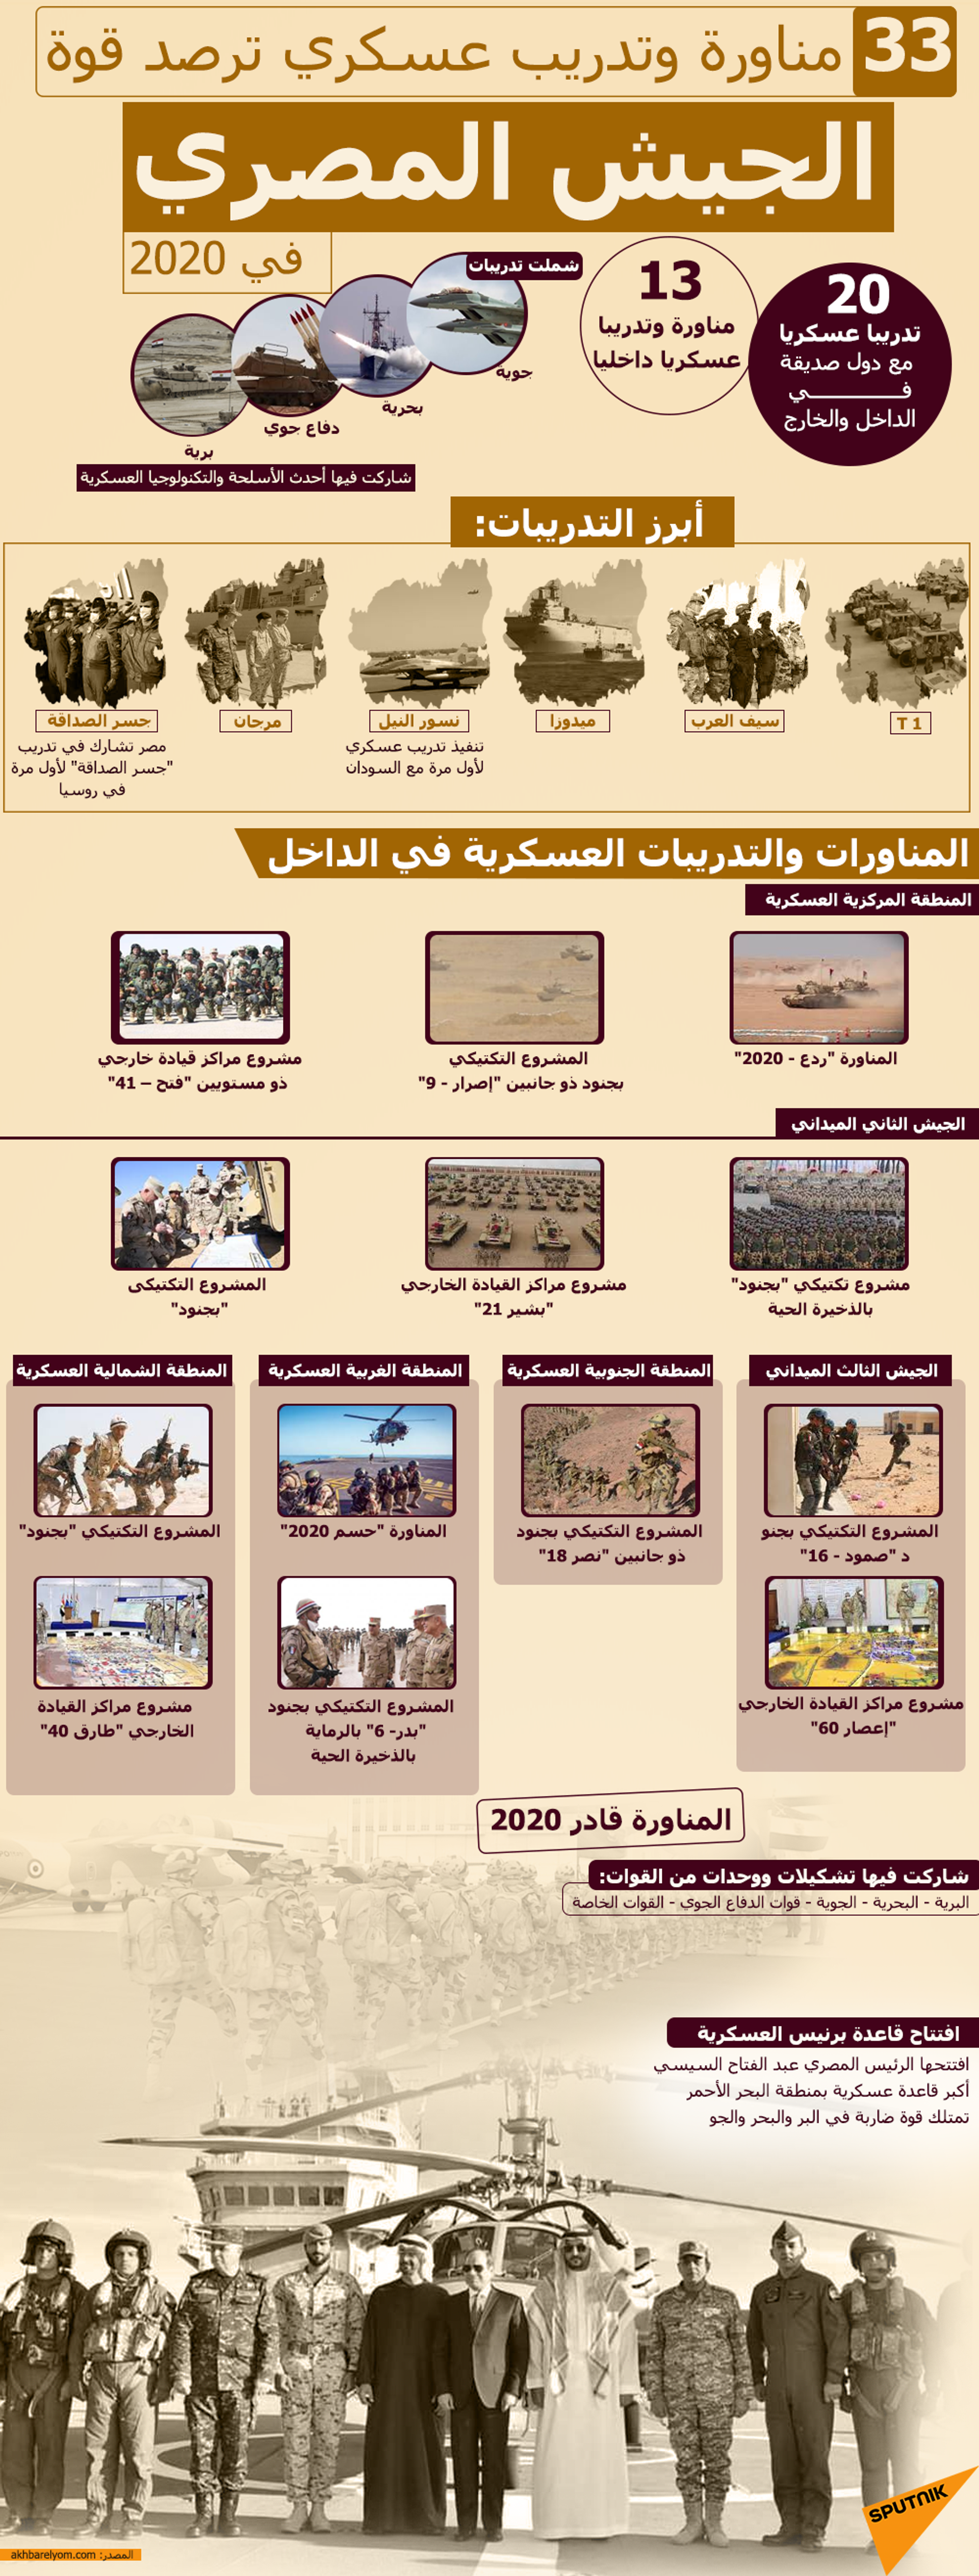 مقارنة بين الجيشين المصري والإسرائيلي في 2021 - سبوتنيك عربي, 1920, 21.02.2021